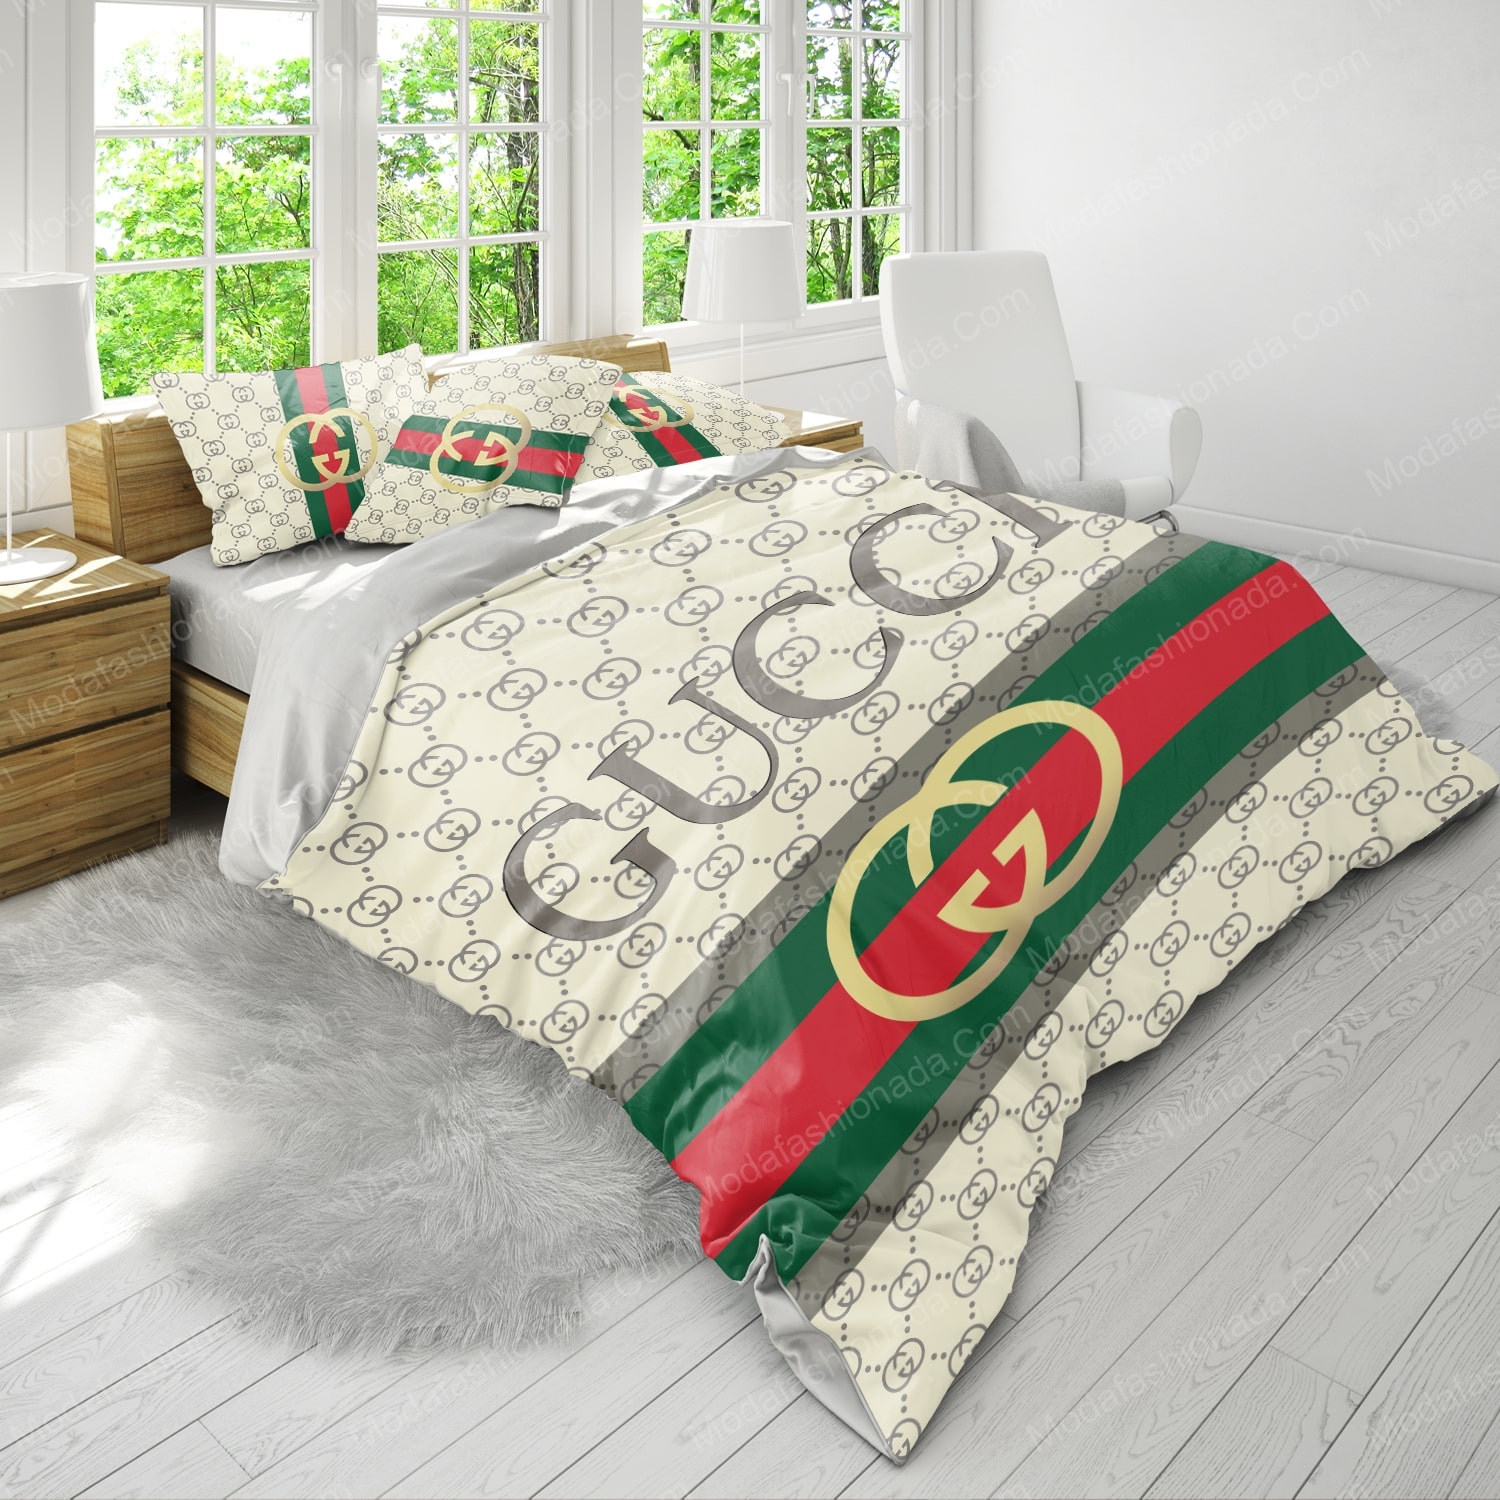 Buy Luxury Gucci Logo Fashion Brands 42 Bedding Set Bed Sets, Bedroom Sets, Comforter  Sets, Duvet Cover, Bedspread